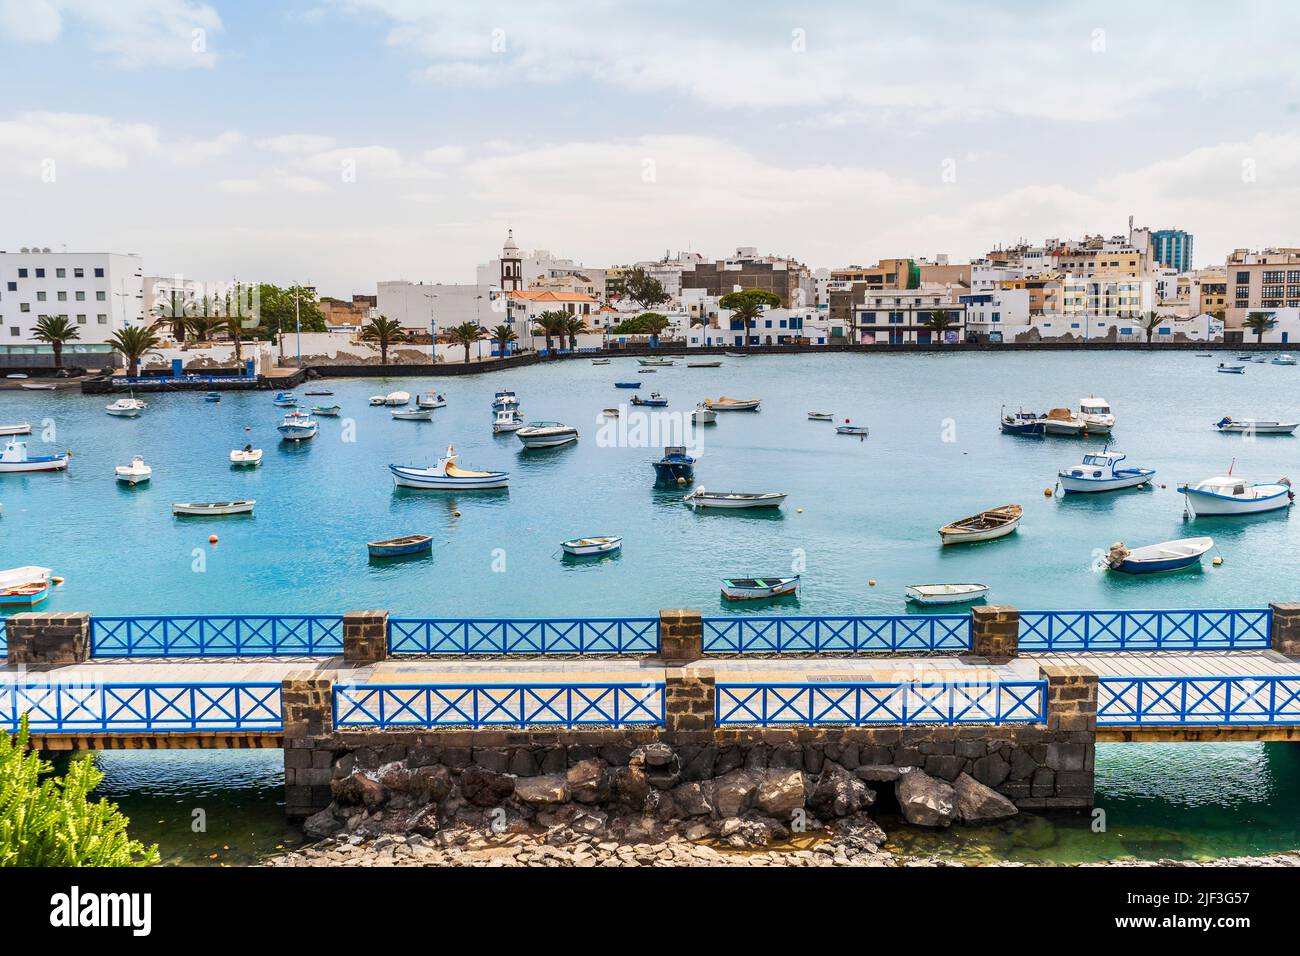 Schöner Kai mit historischer Architektur und Booten auf blauem Wasser in Arrecife, Lanzarote, Kanarische Inseln, Spanien Stockfoto